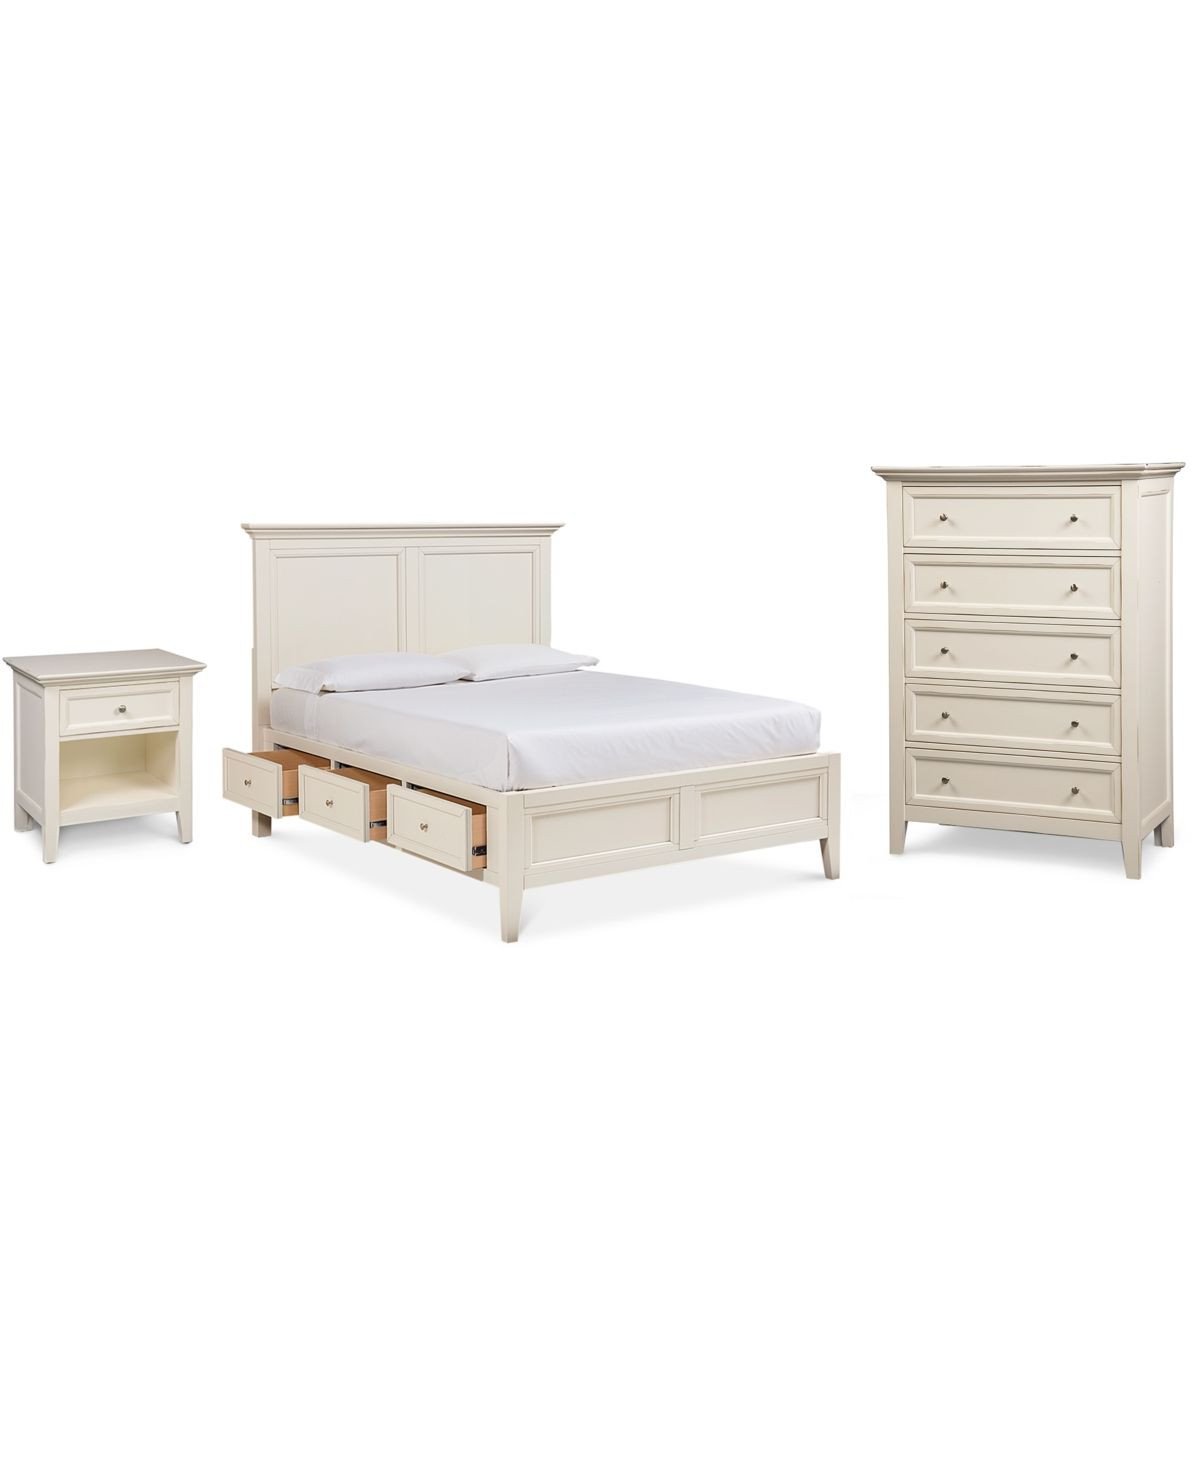 Bedroom Set with Storage Luxury Sanibel Storage Bedroom Furniture 3 Pc Set Queen Bed